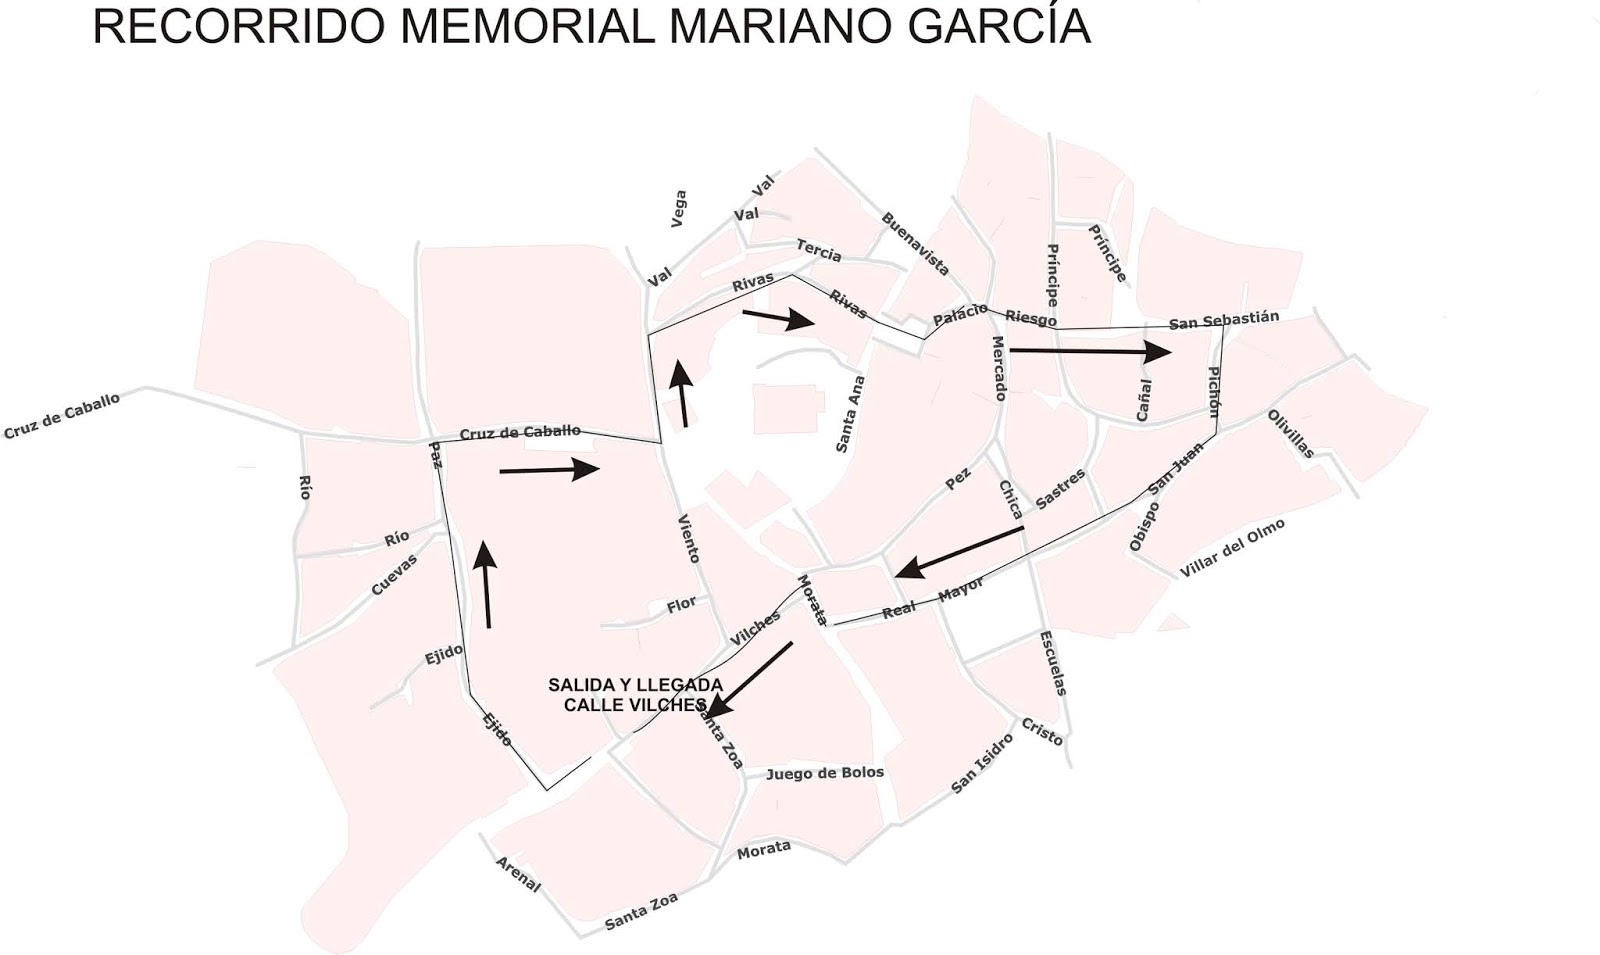 mEMORIAL_MARIANO.jpg - 114.42 kB